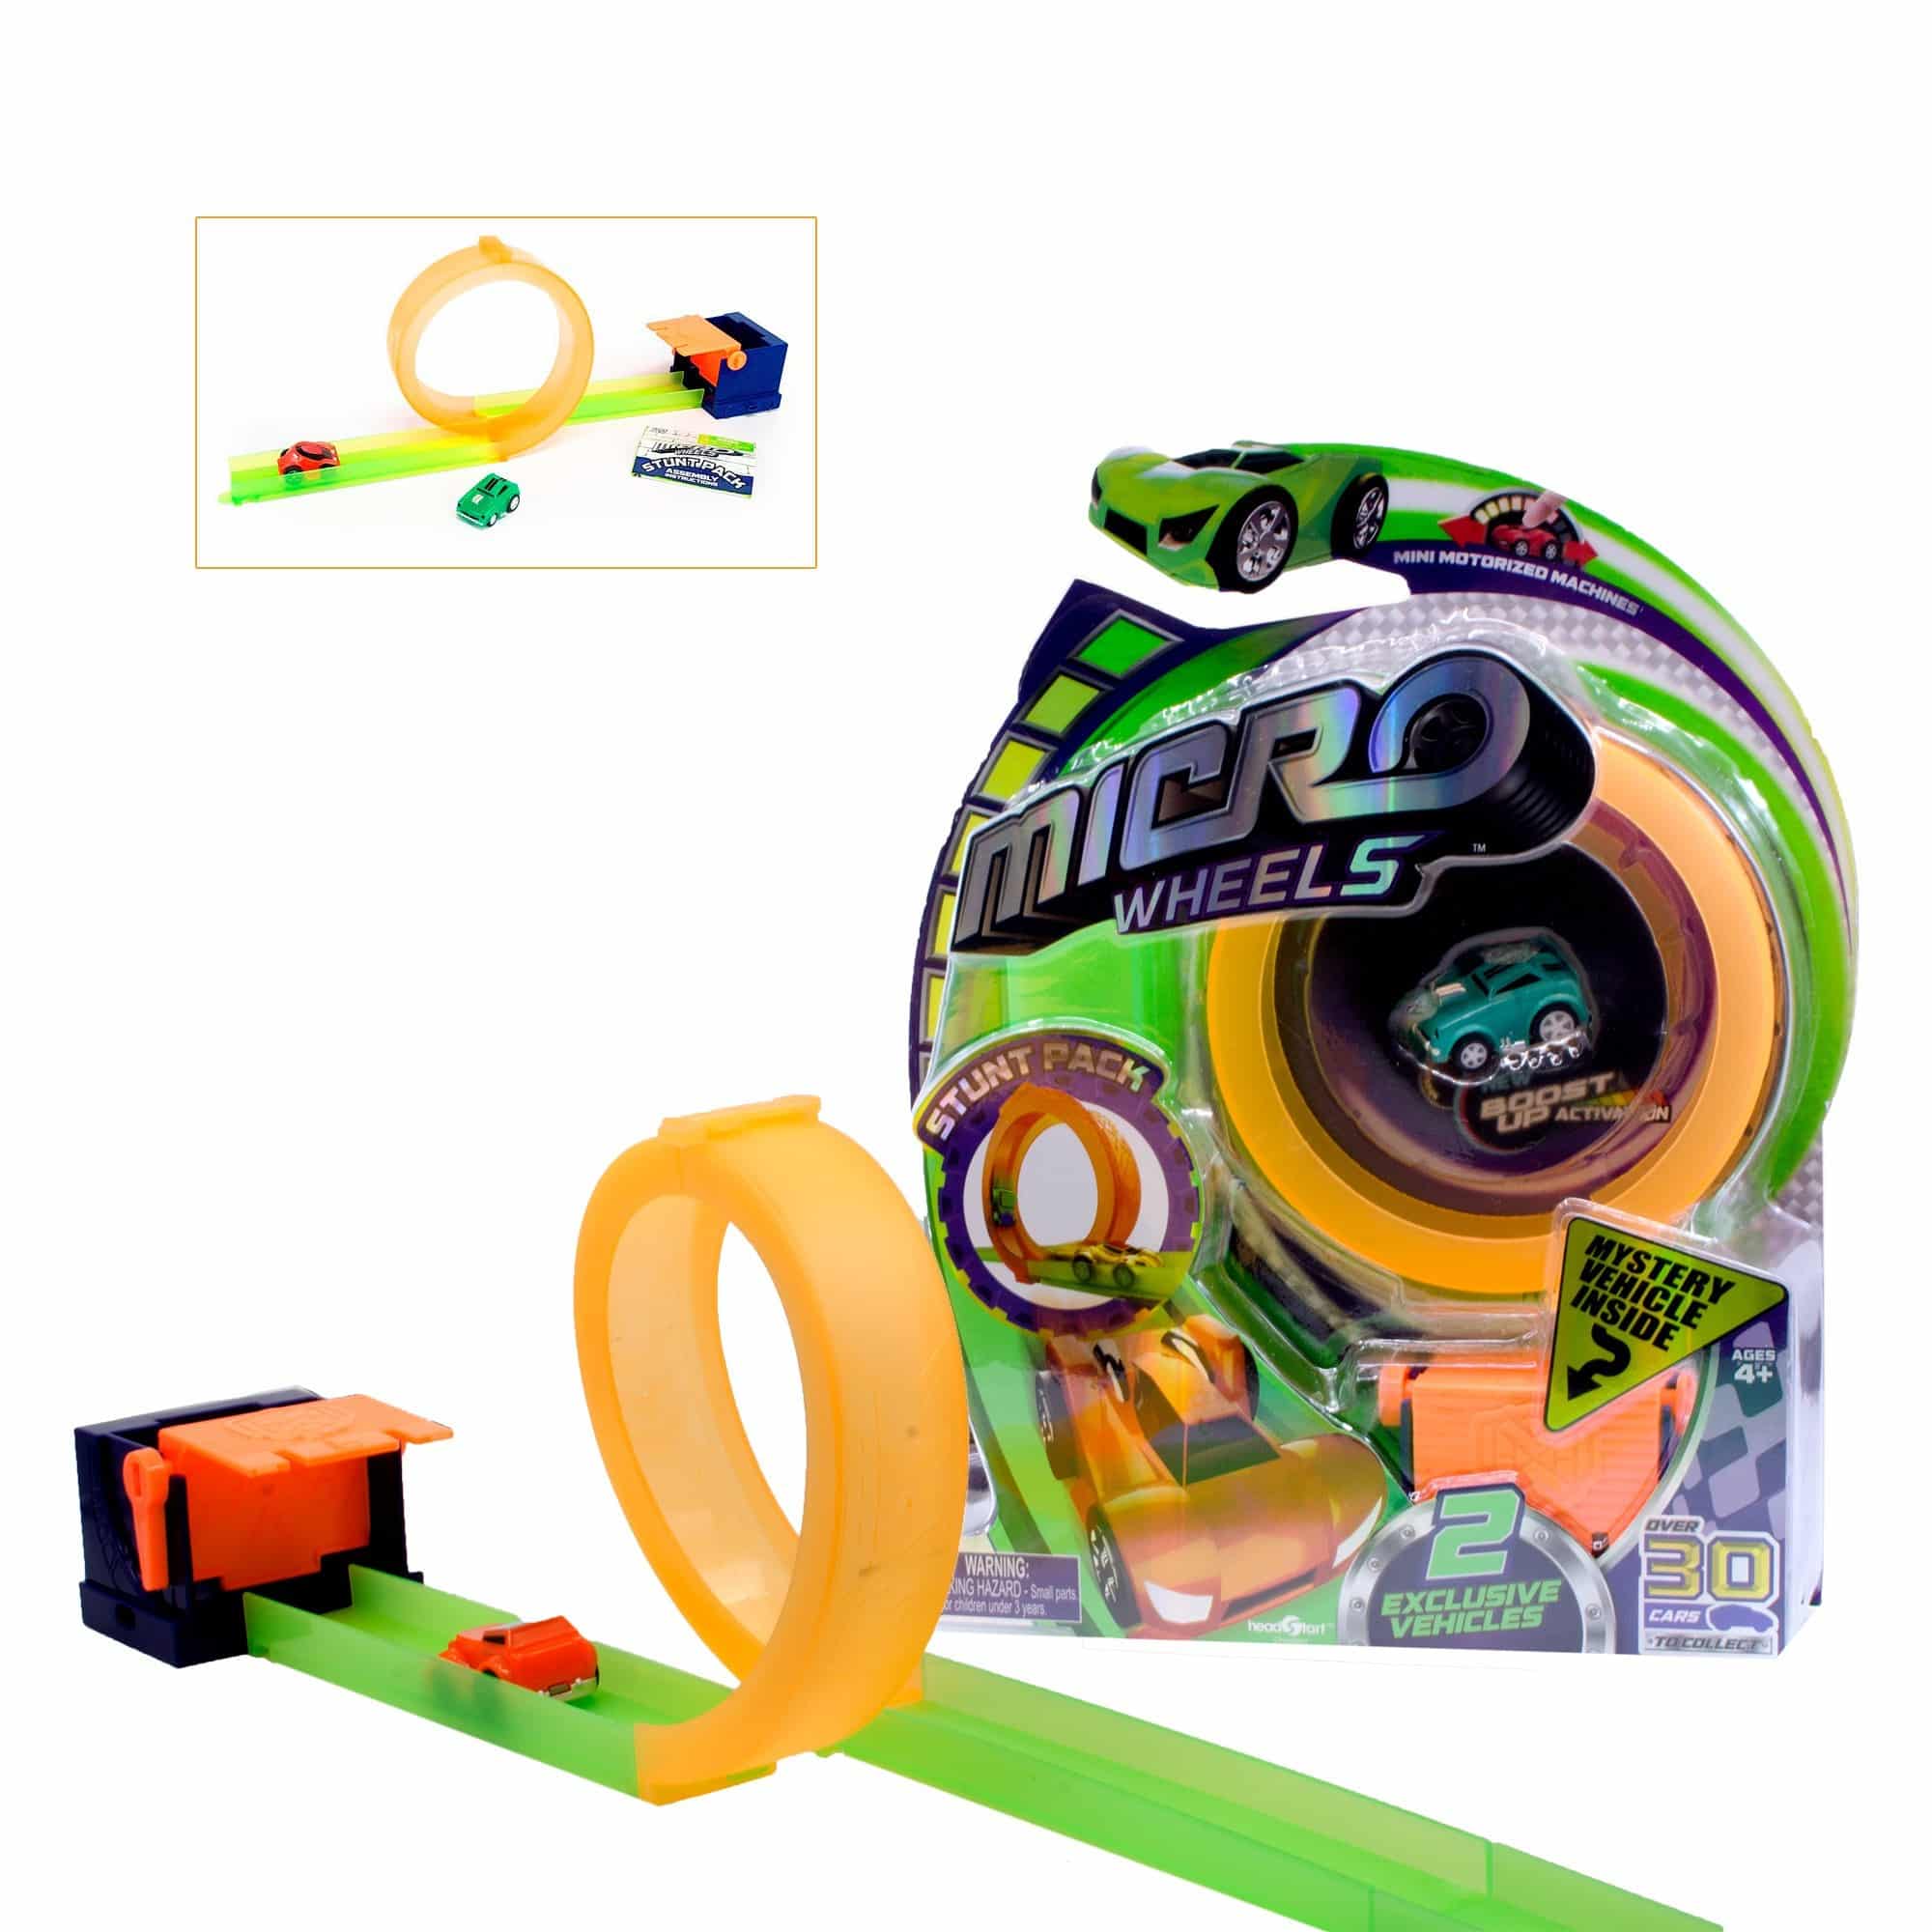 Micro Wheels - Stunt Pack - Orange Loop Track